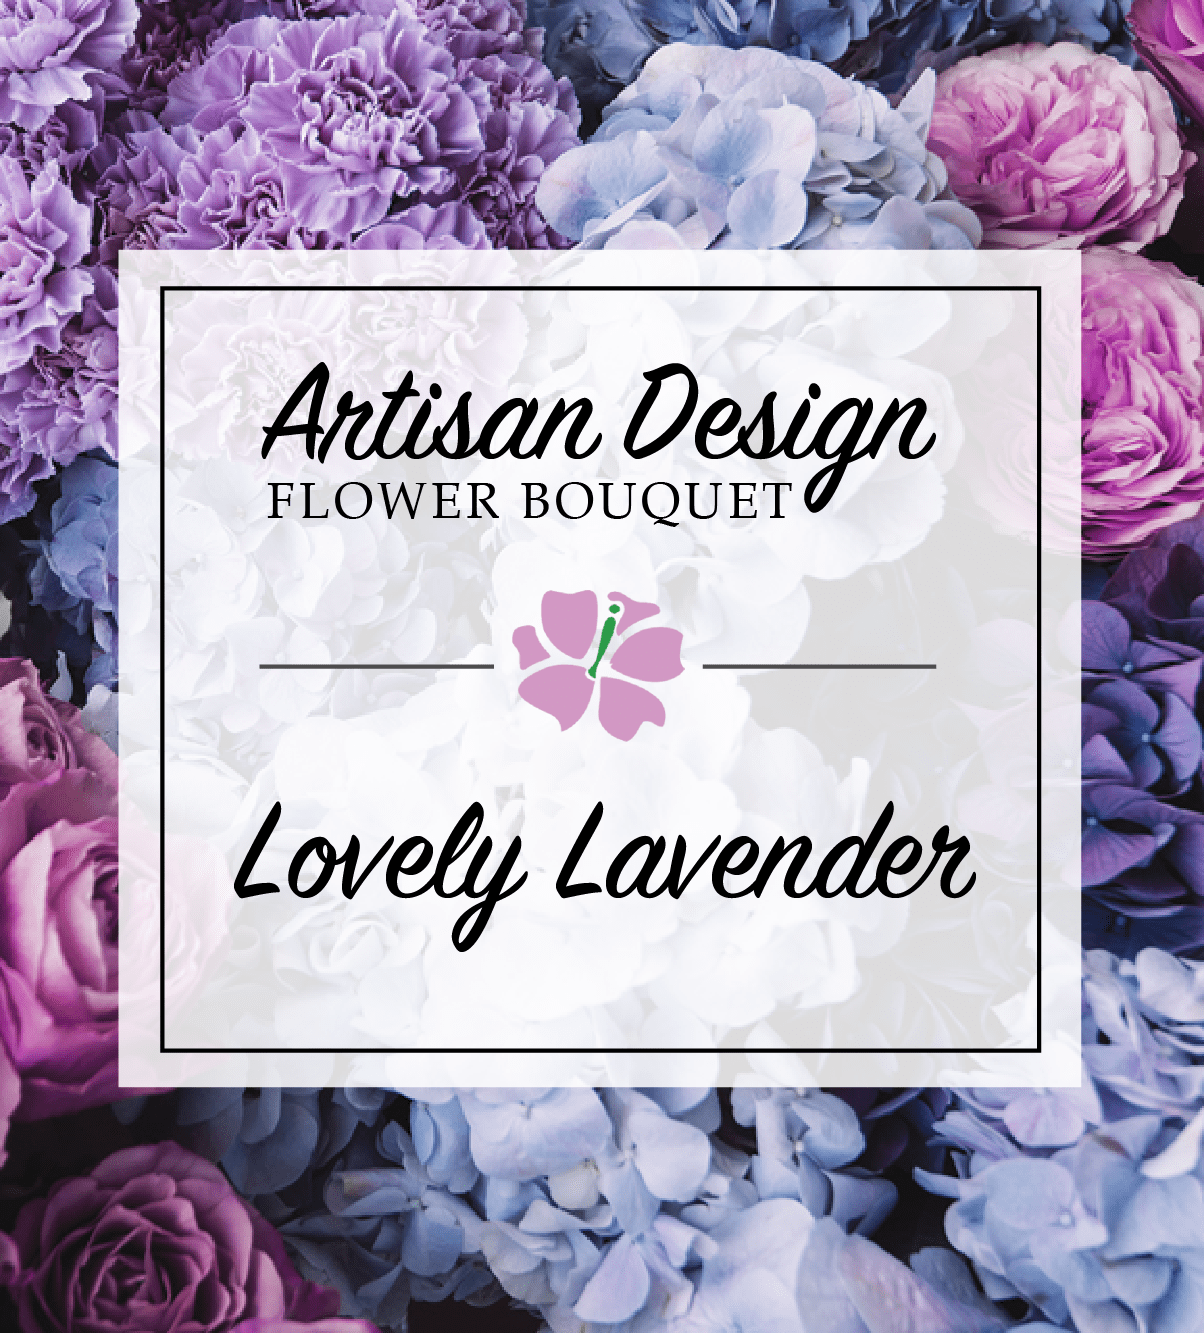 Artist's Design: Lovely Lavender